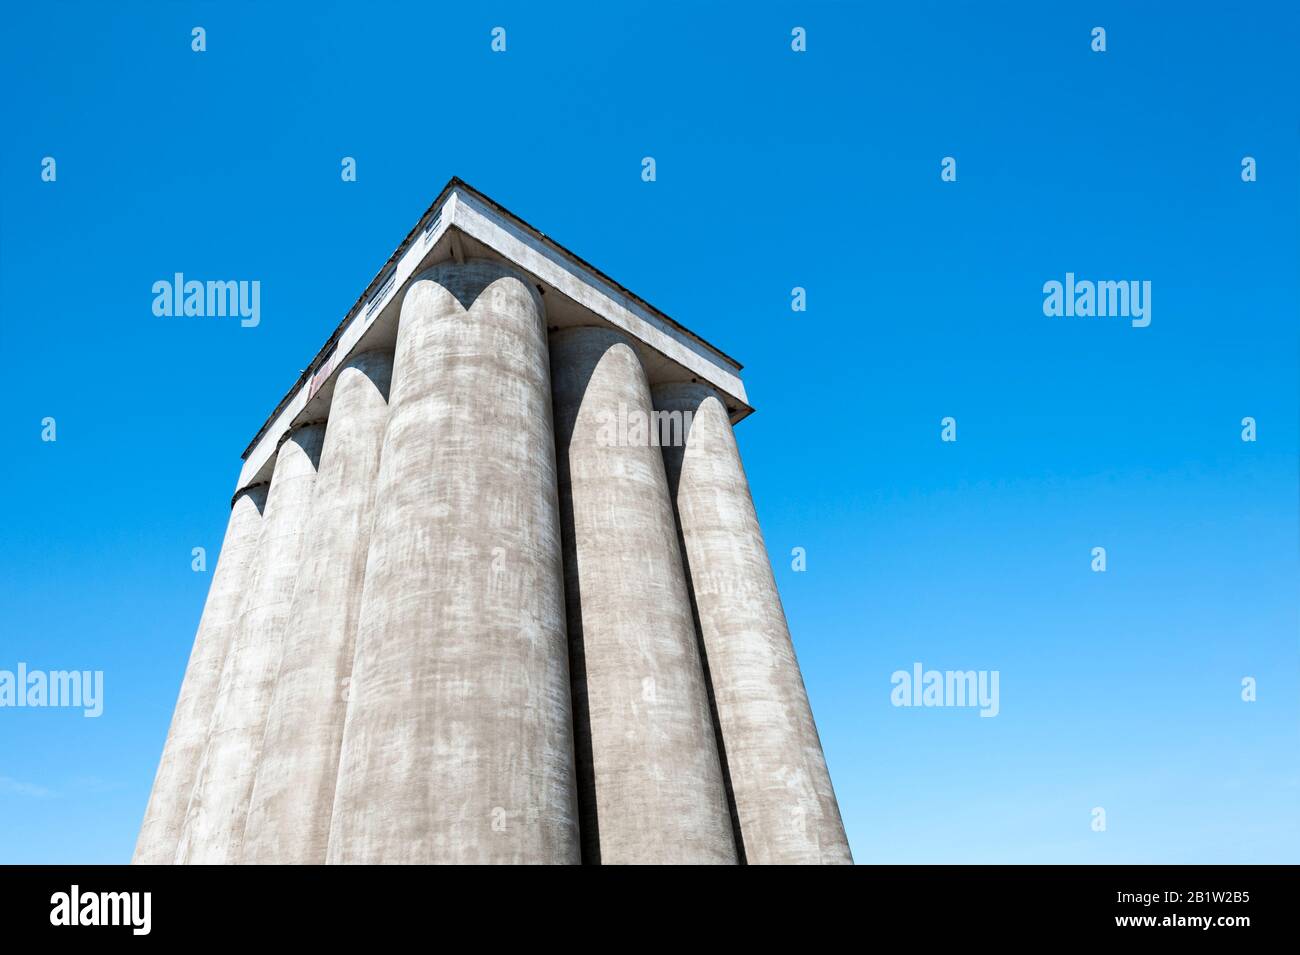 CopySpace disponible en esta imagen de mirar hacia arriba en la parte superior de los tubos de almacenamiento hechos de concreto de un granero y azul cielo claro. Foto de stock